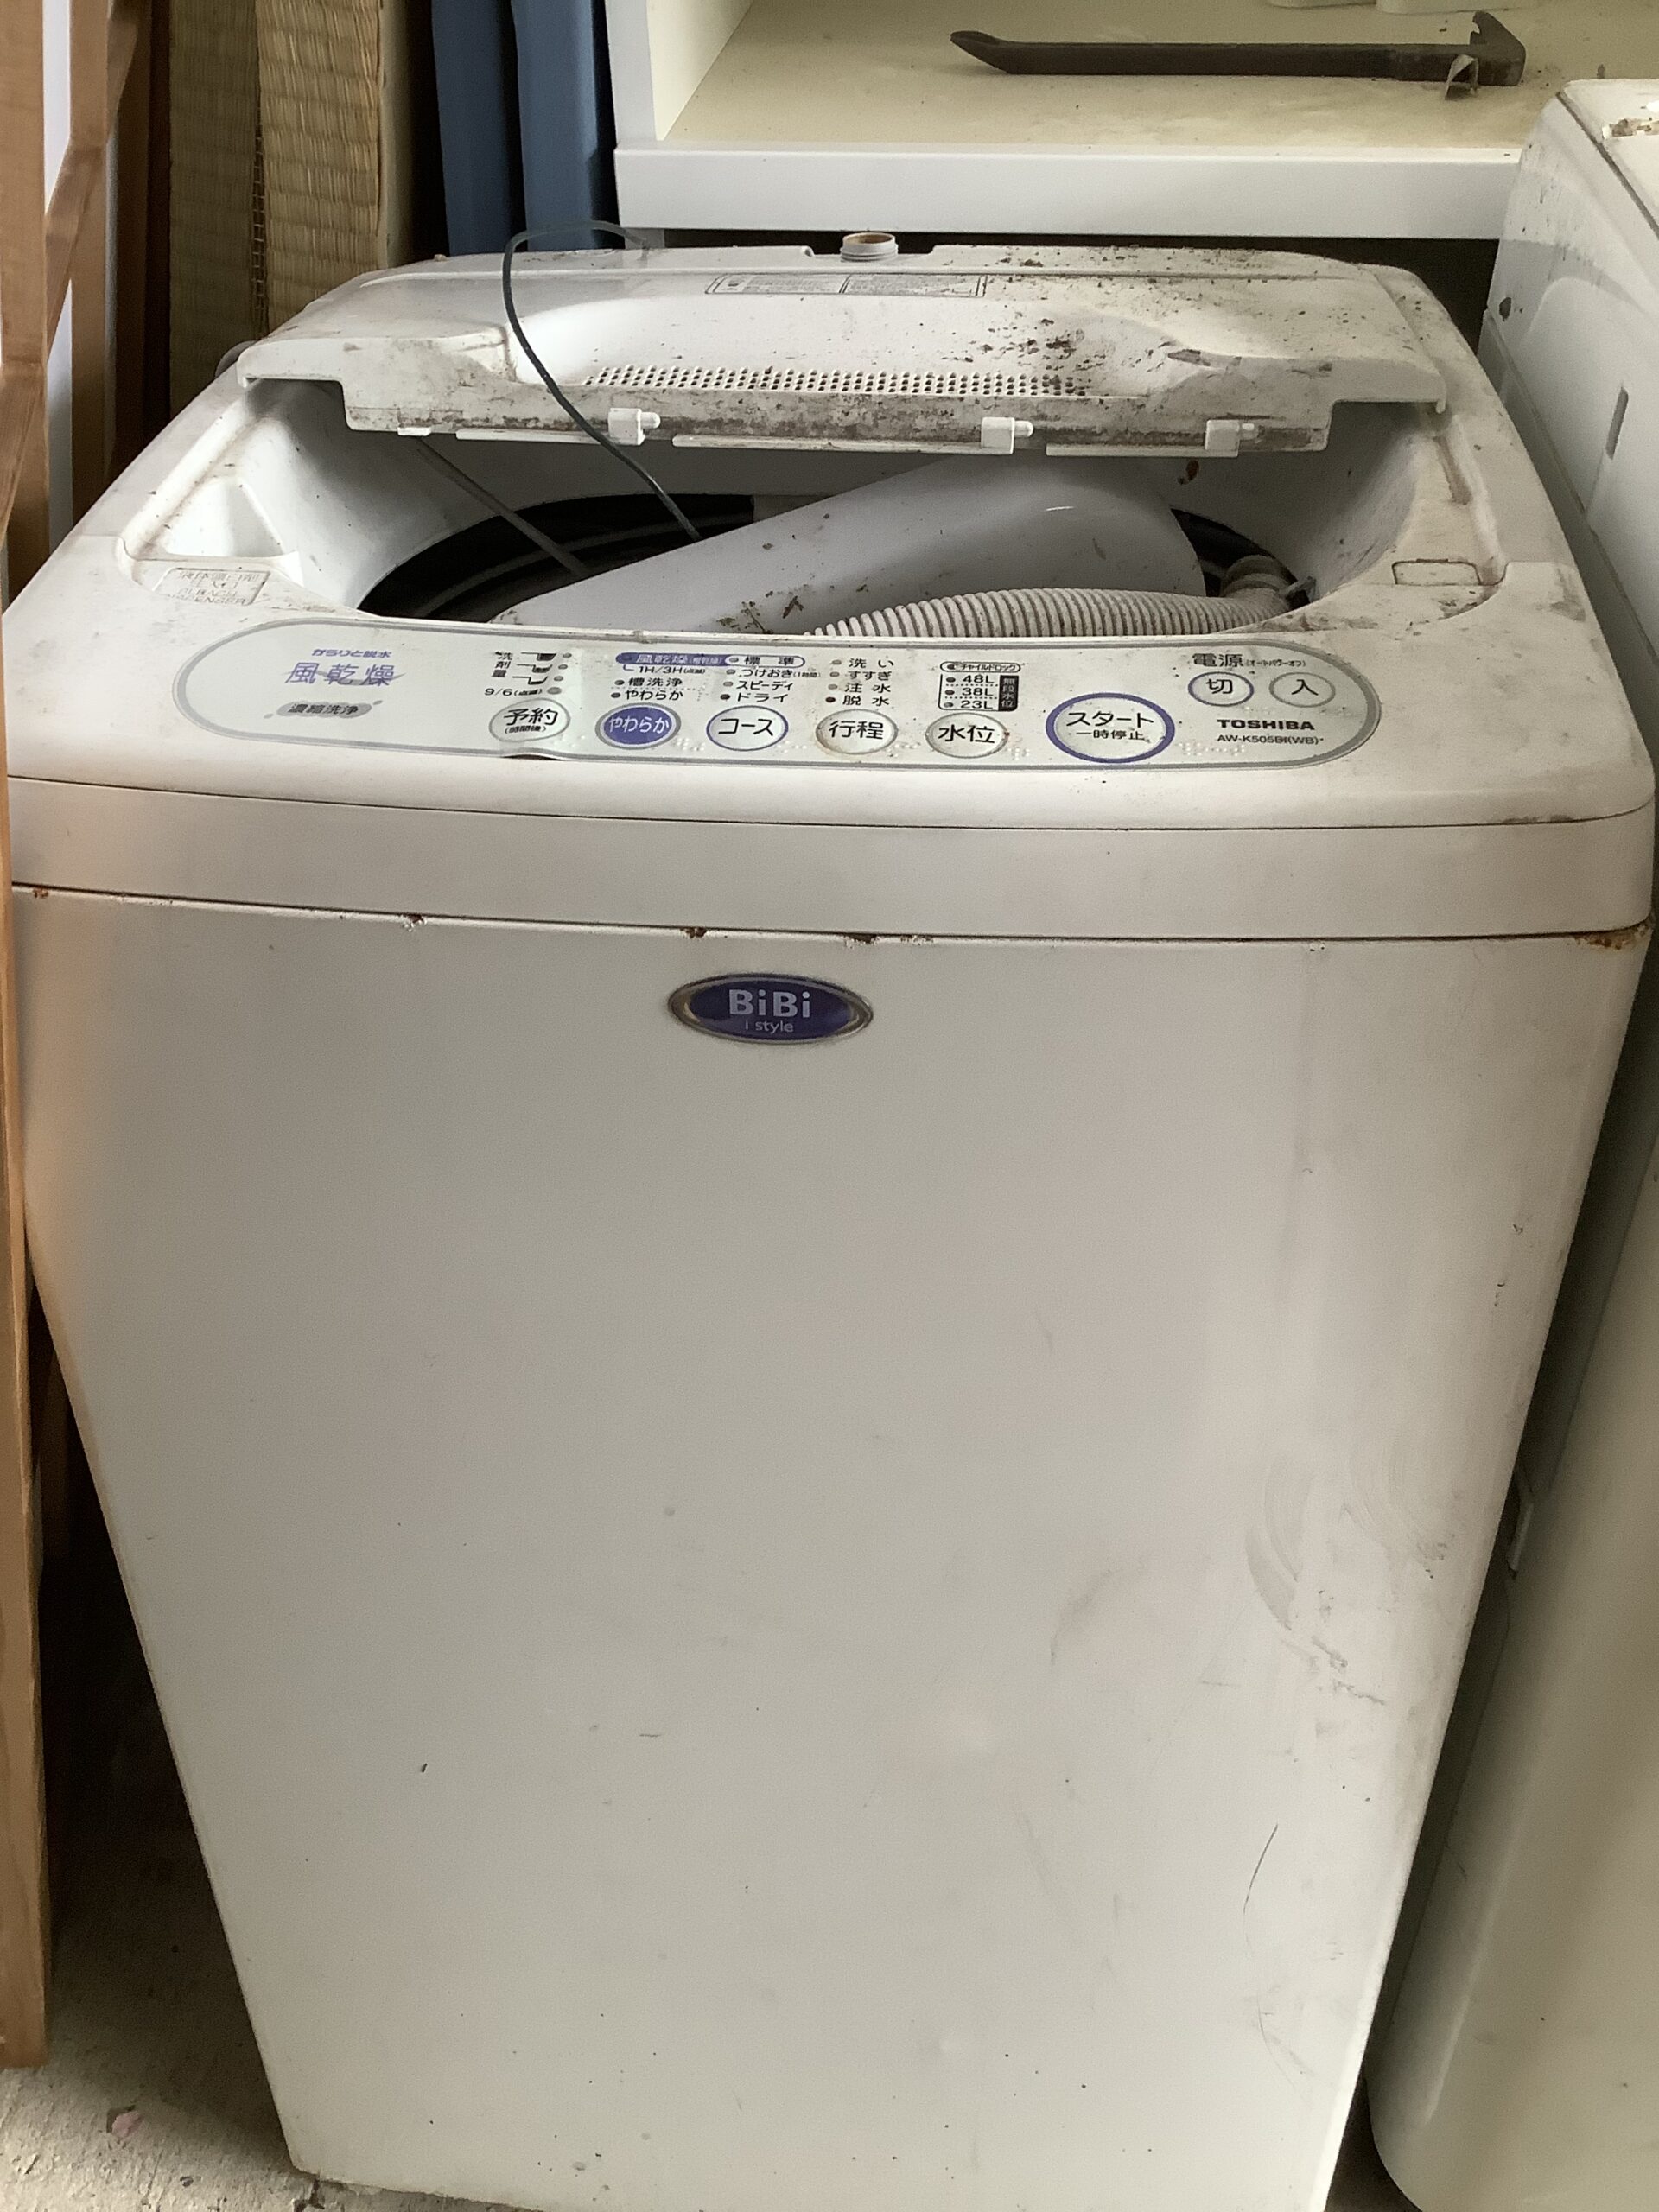 倉敷市連島で回収した洗濯機